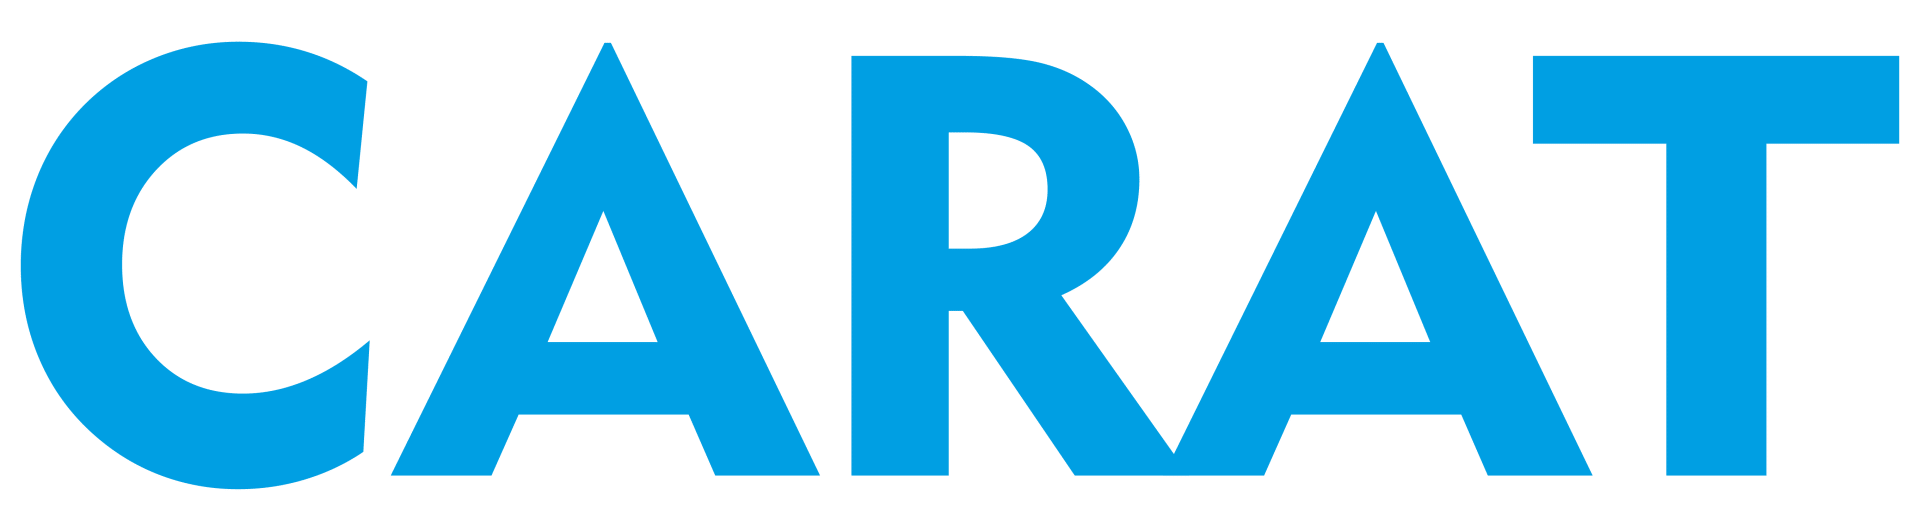 Carat Logo - Carat Logo Large